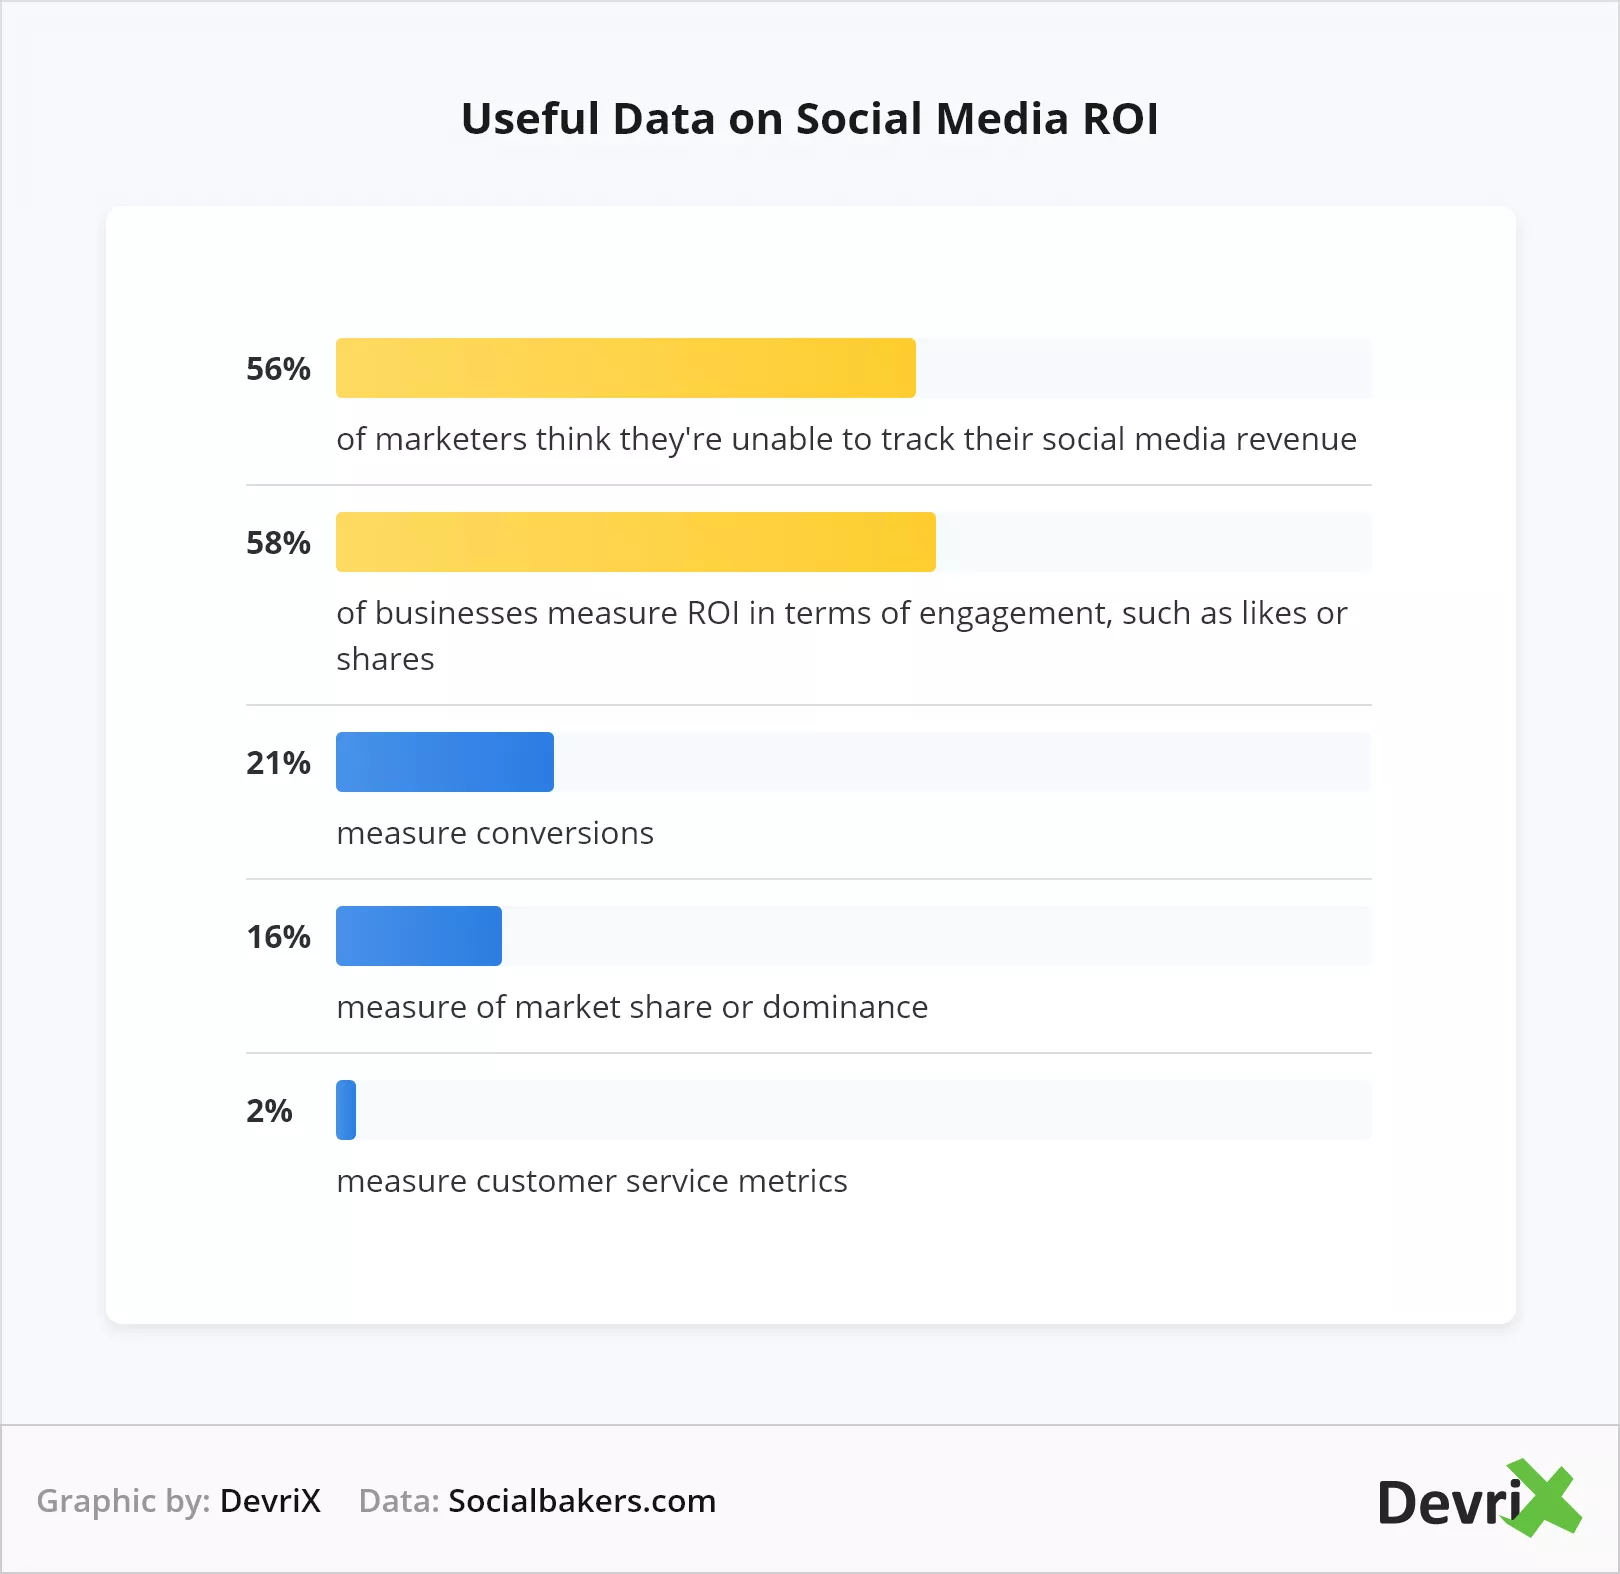 소셜 미디어 ROI에 대한 유용한 데이터